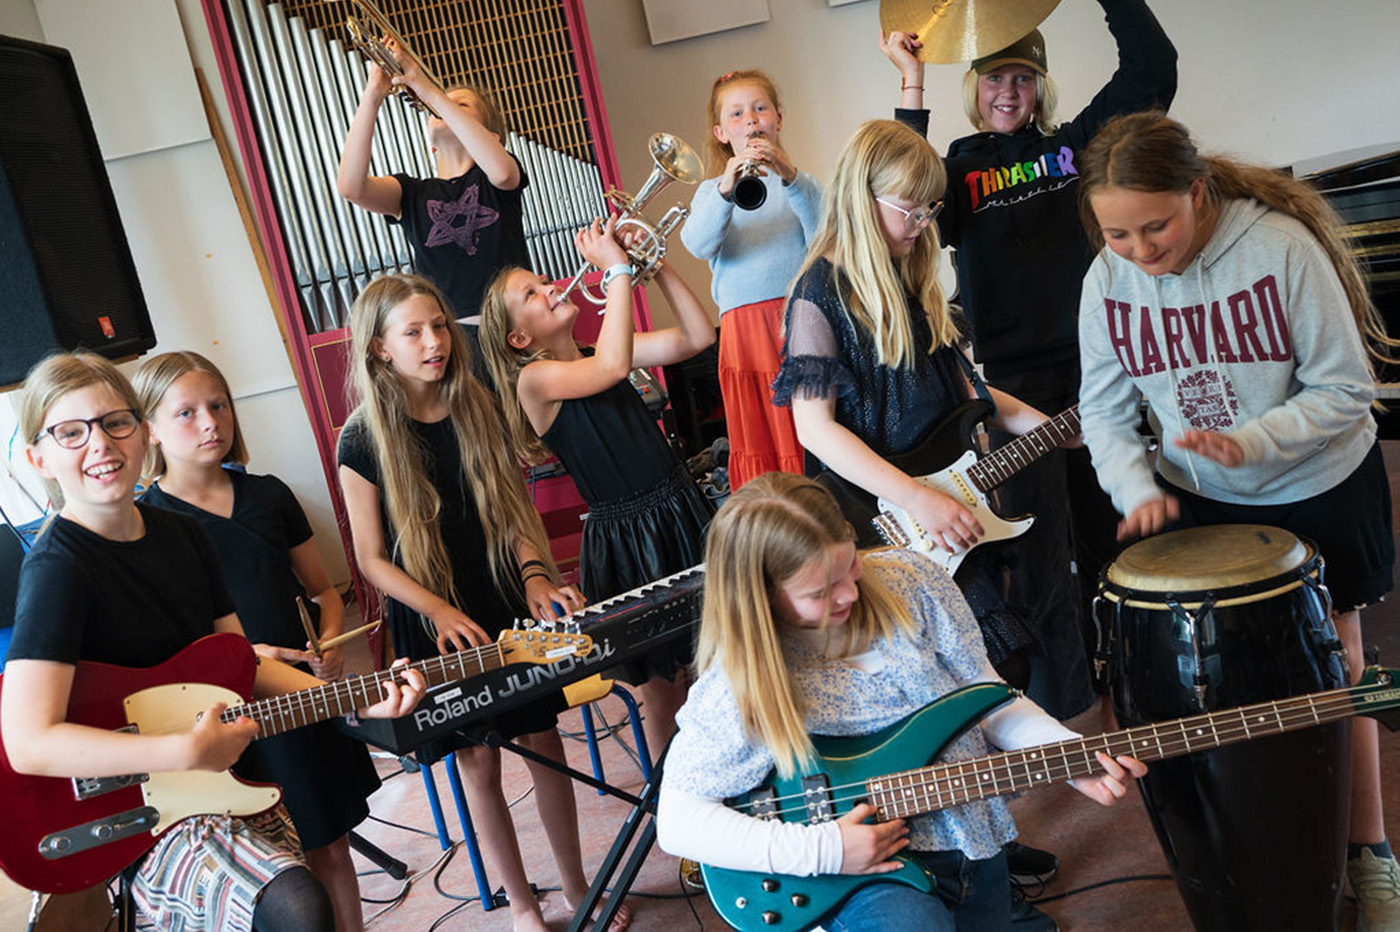 JazzCamp for Girls Takes the North. Warsztaty jazzowe dla dziewczyn – po raz pierwszy w Polsce!